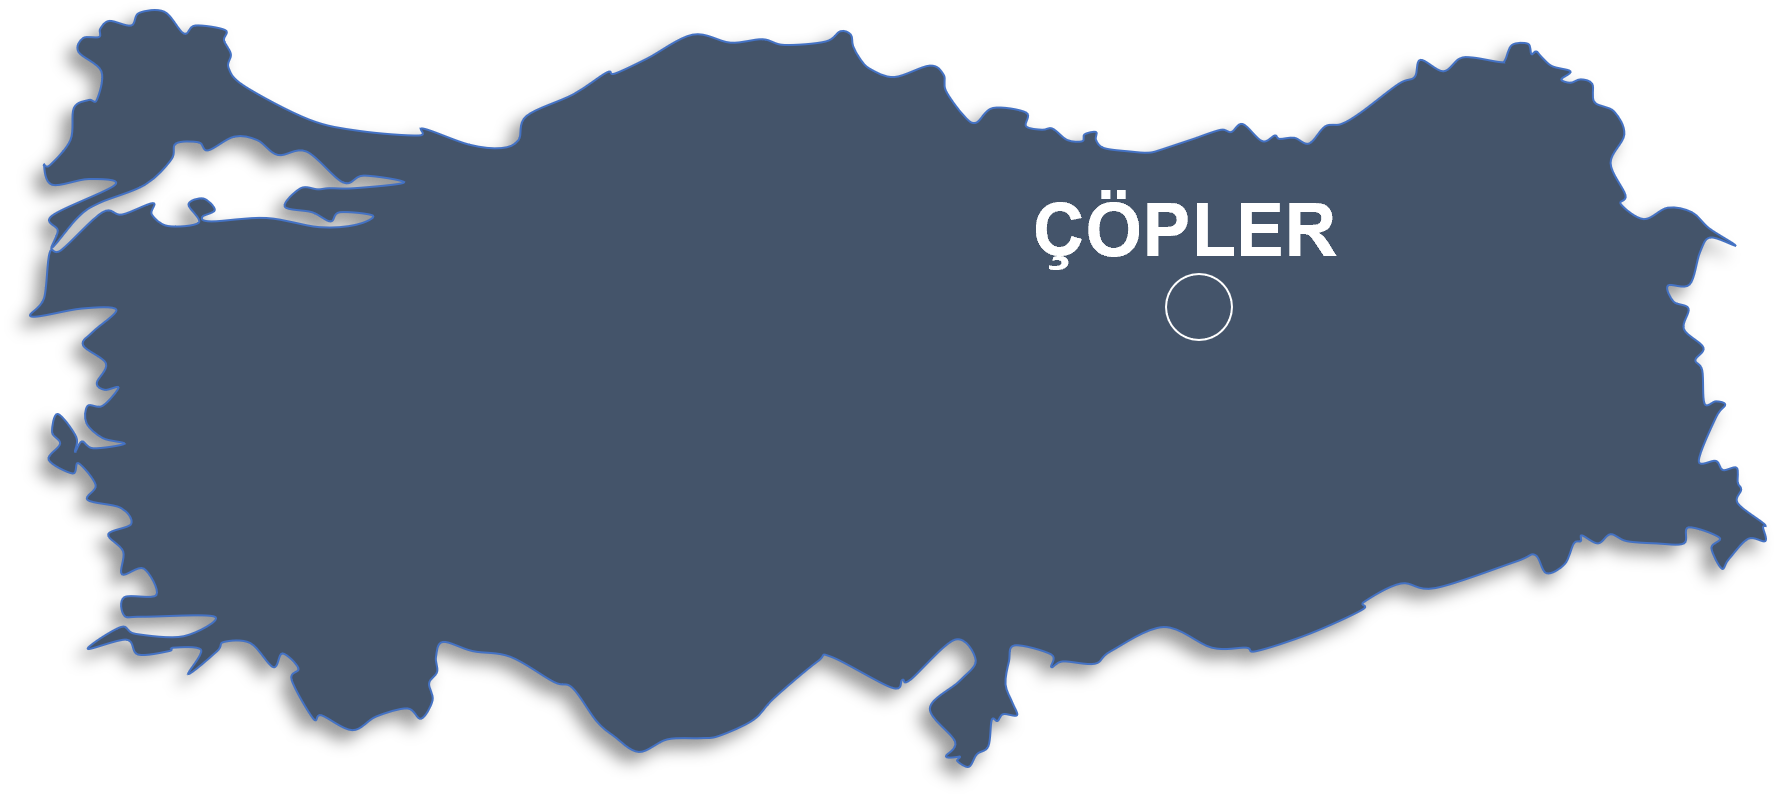 Copler Map